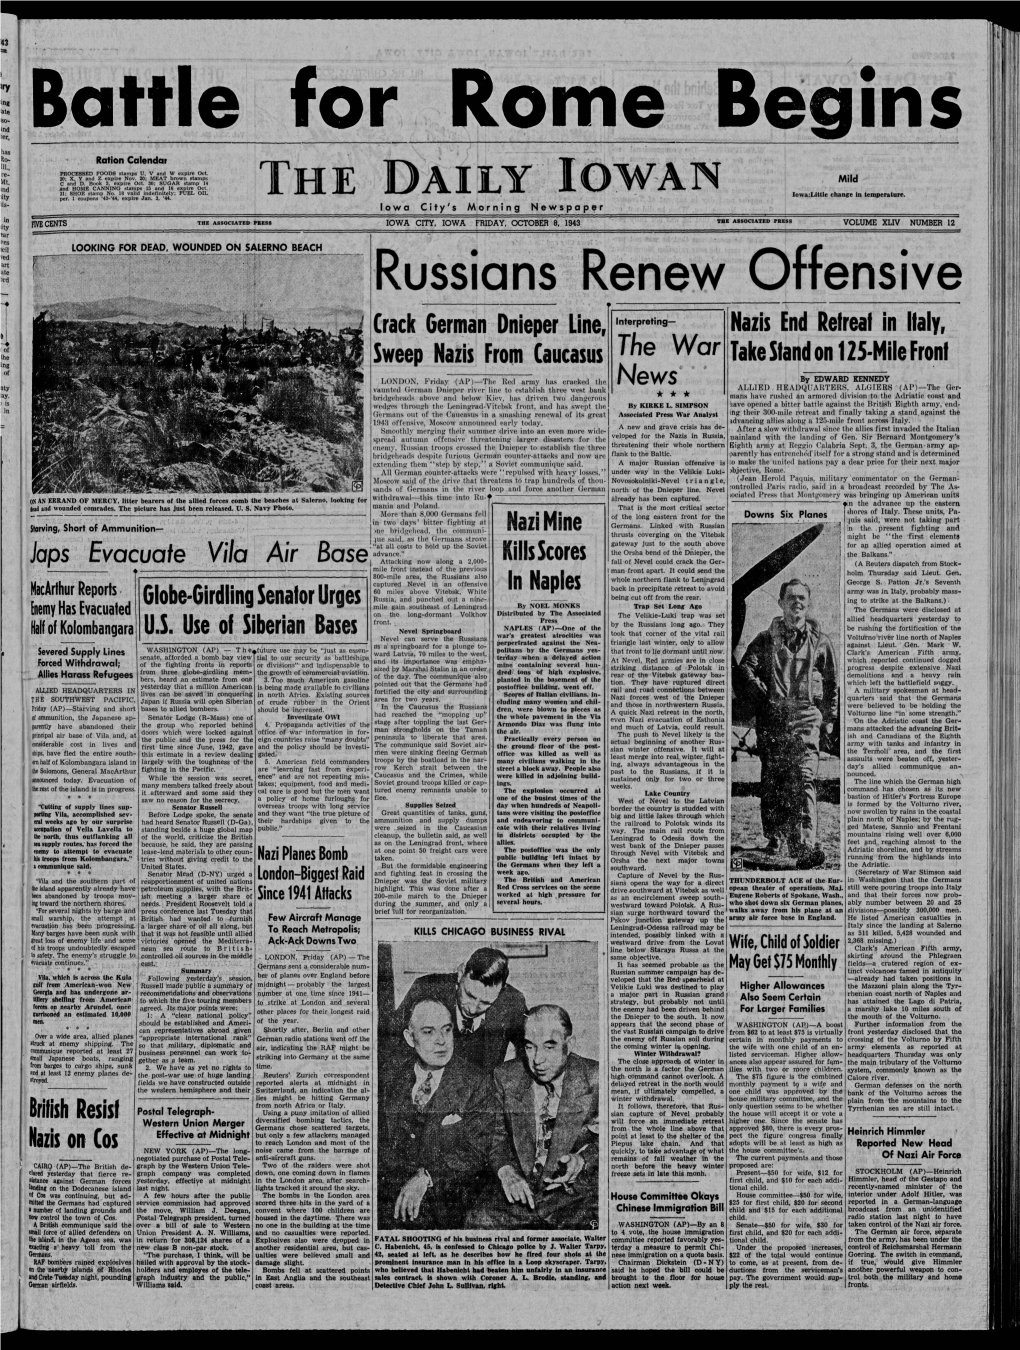 Daily Iowan (Iowa City, Iowa), 1943-10-08